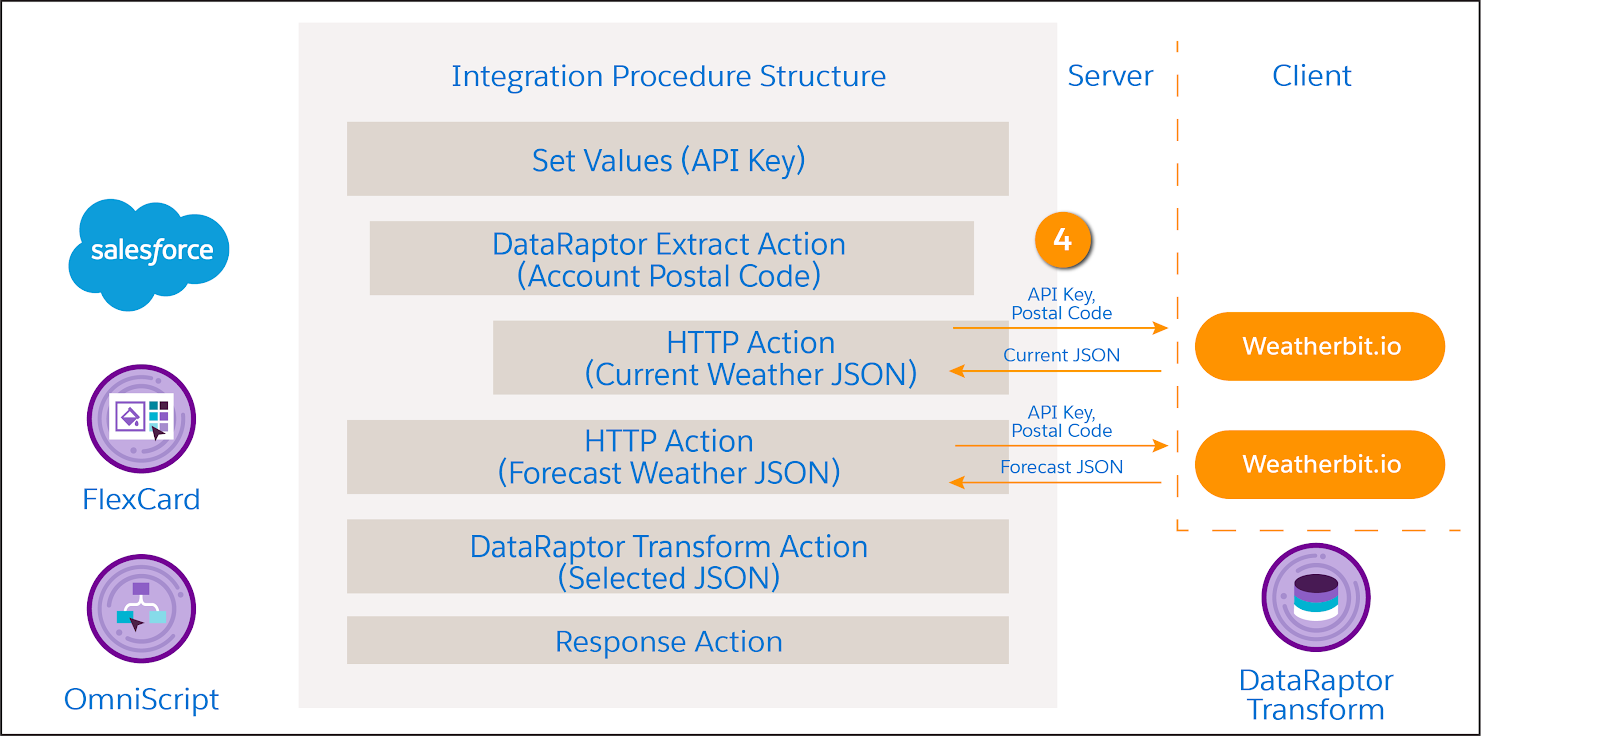 2 つの HTTP Action 要素は取引先の郵便番号と API キーを Weatherbit.io に送信し、天気データを受信する。